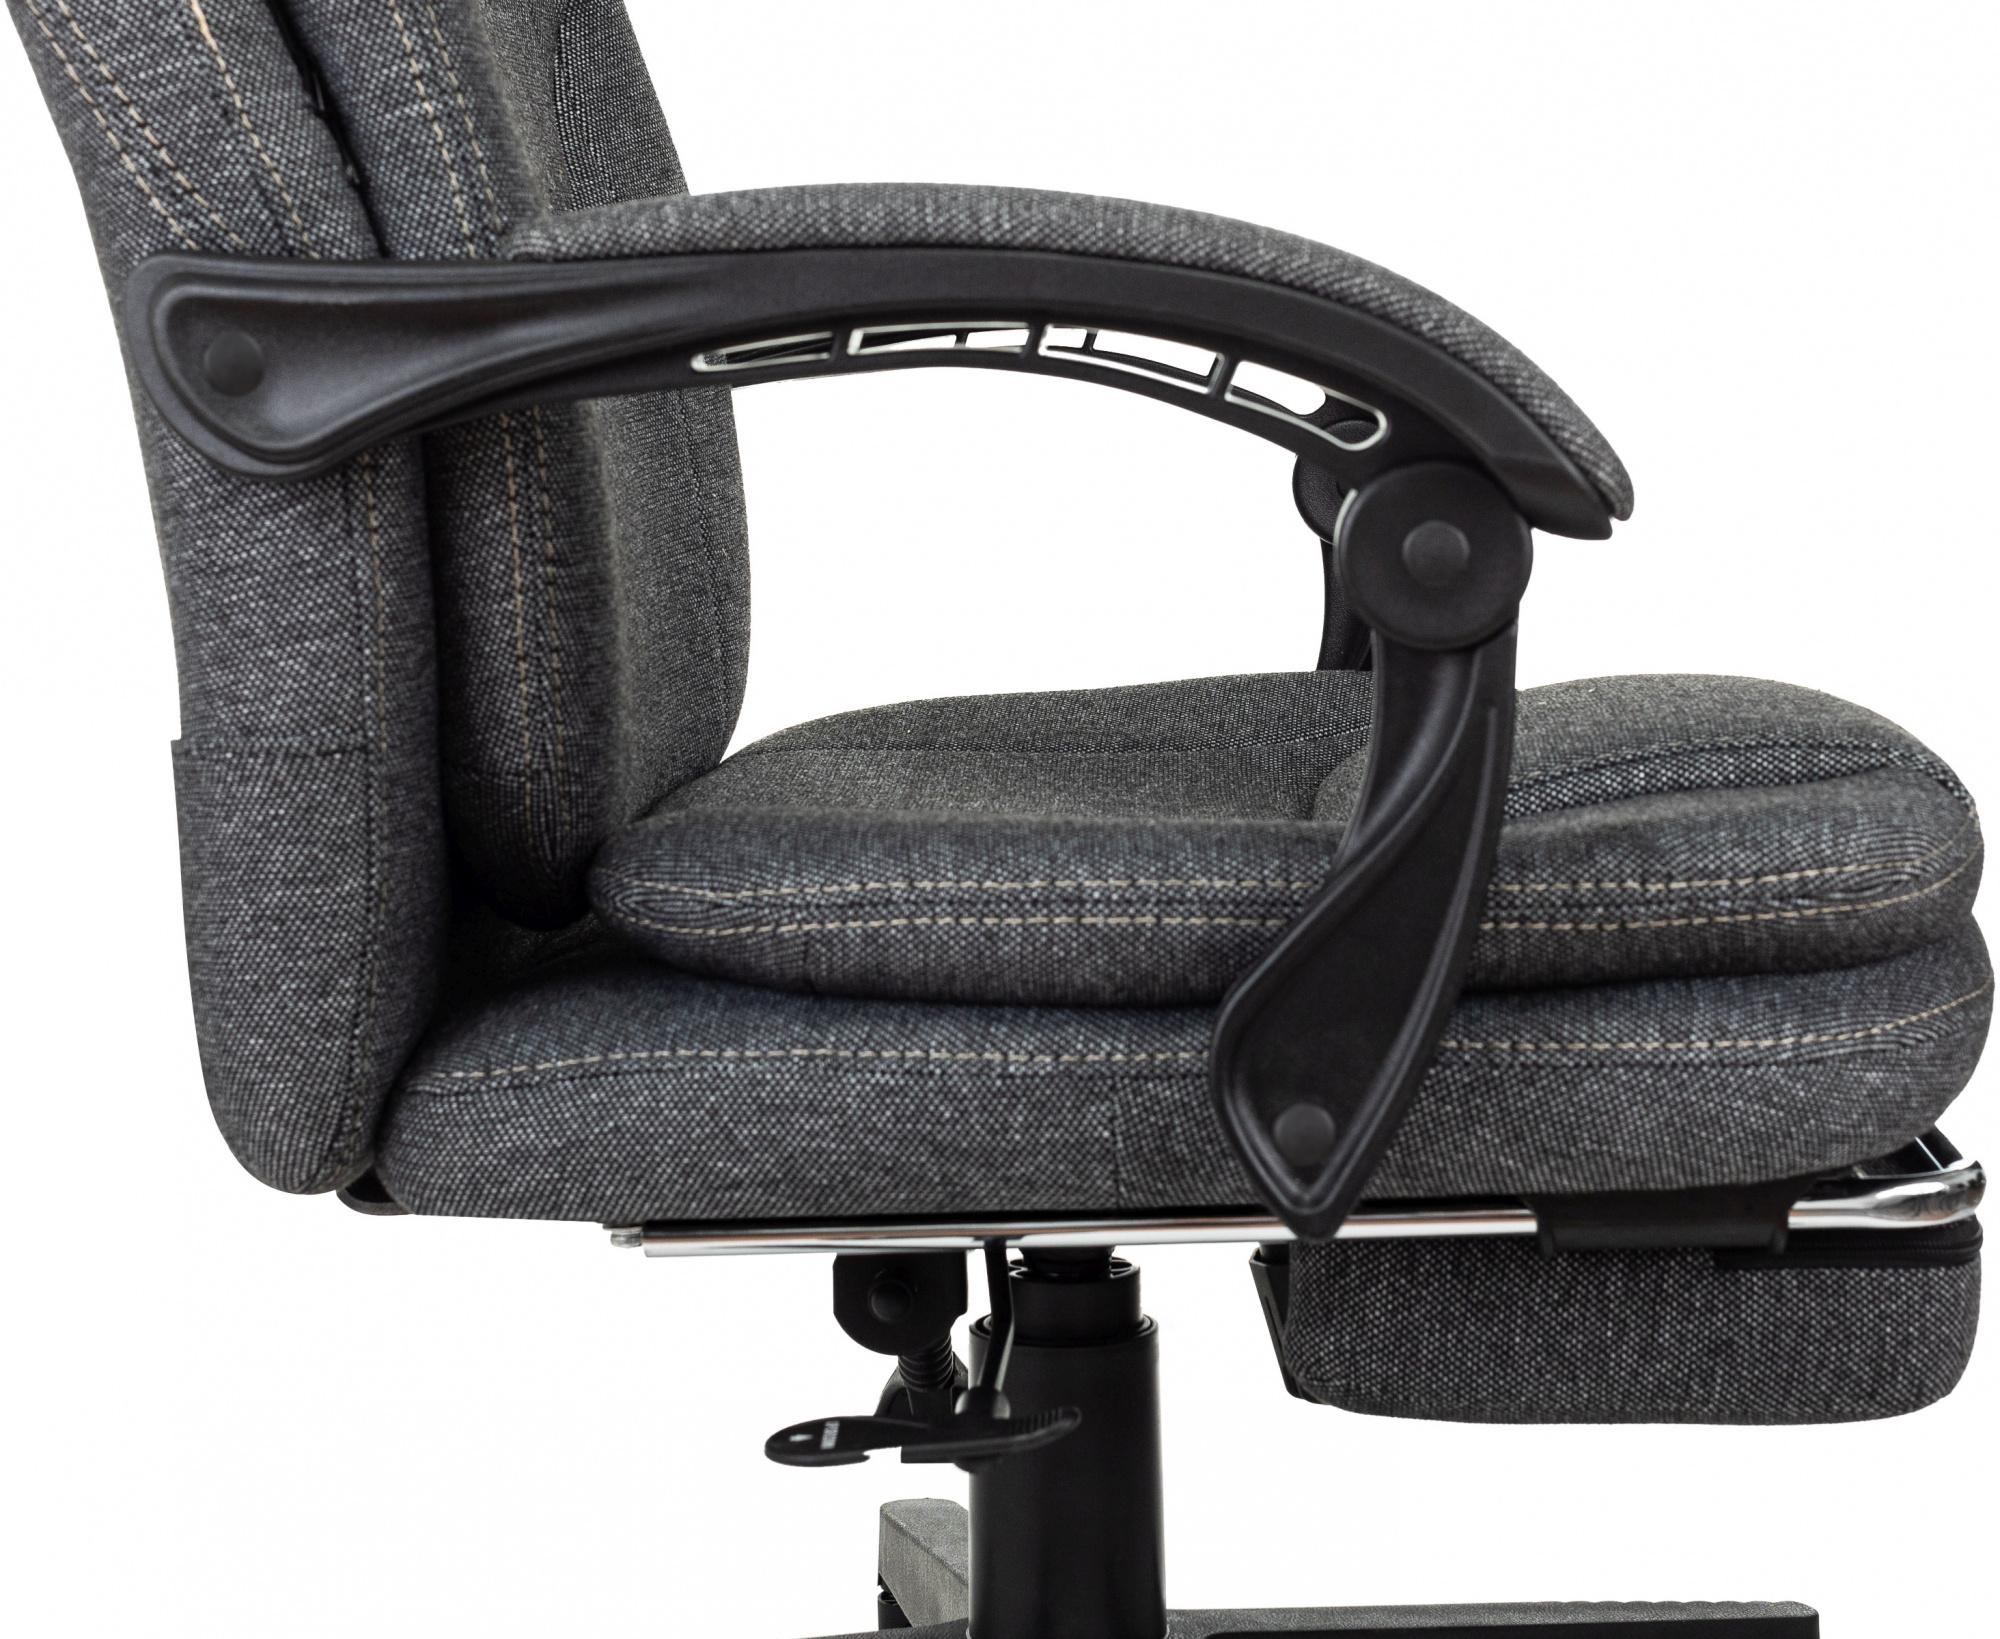 Кресло руководителя Бюрократ CH868MSGF серый 3C1 крестов пластик подстдля ног пластик черный - Дополнительные фотографии